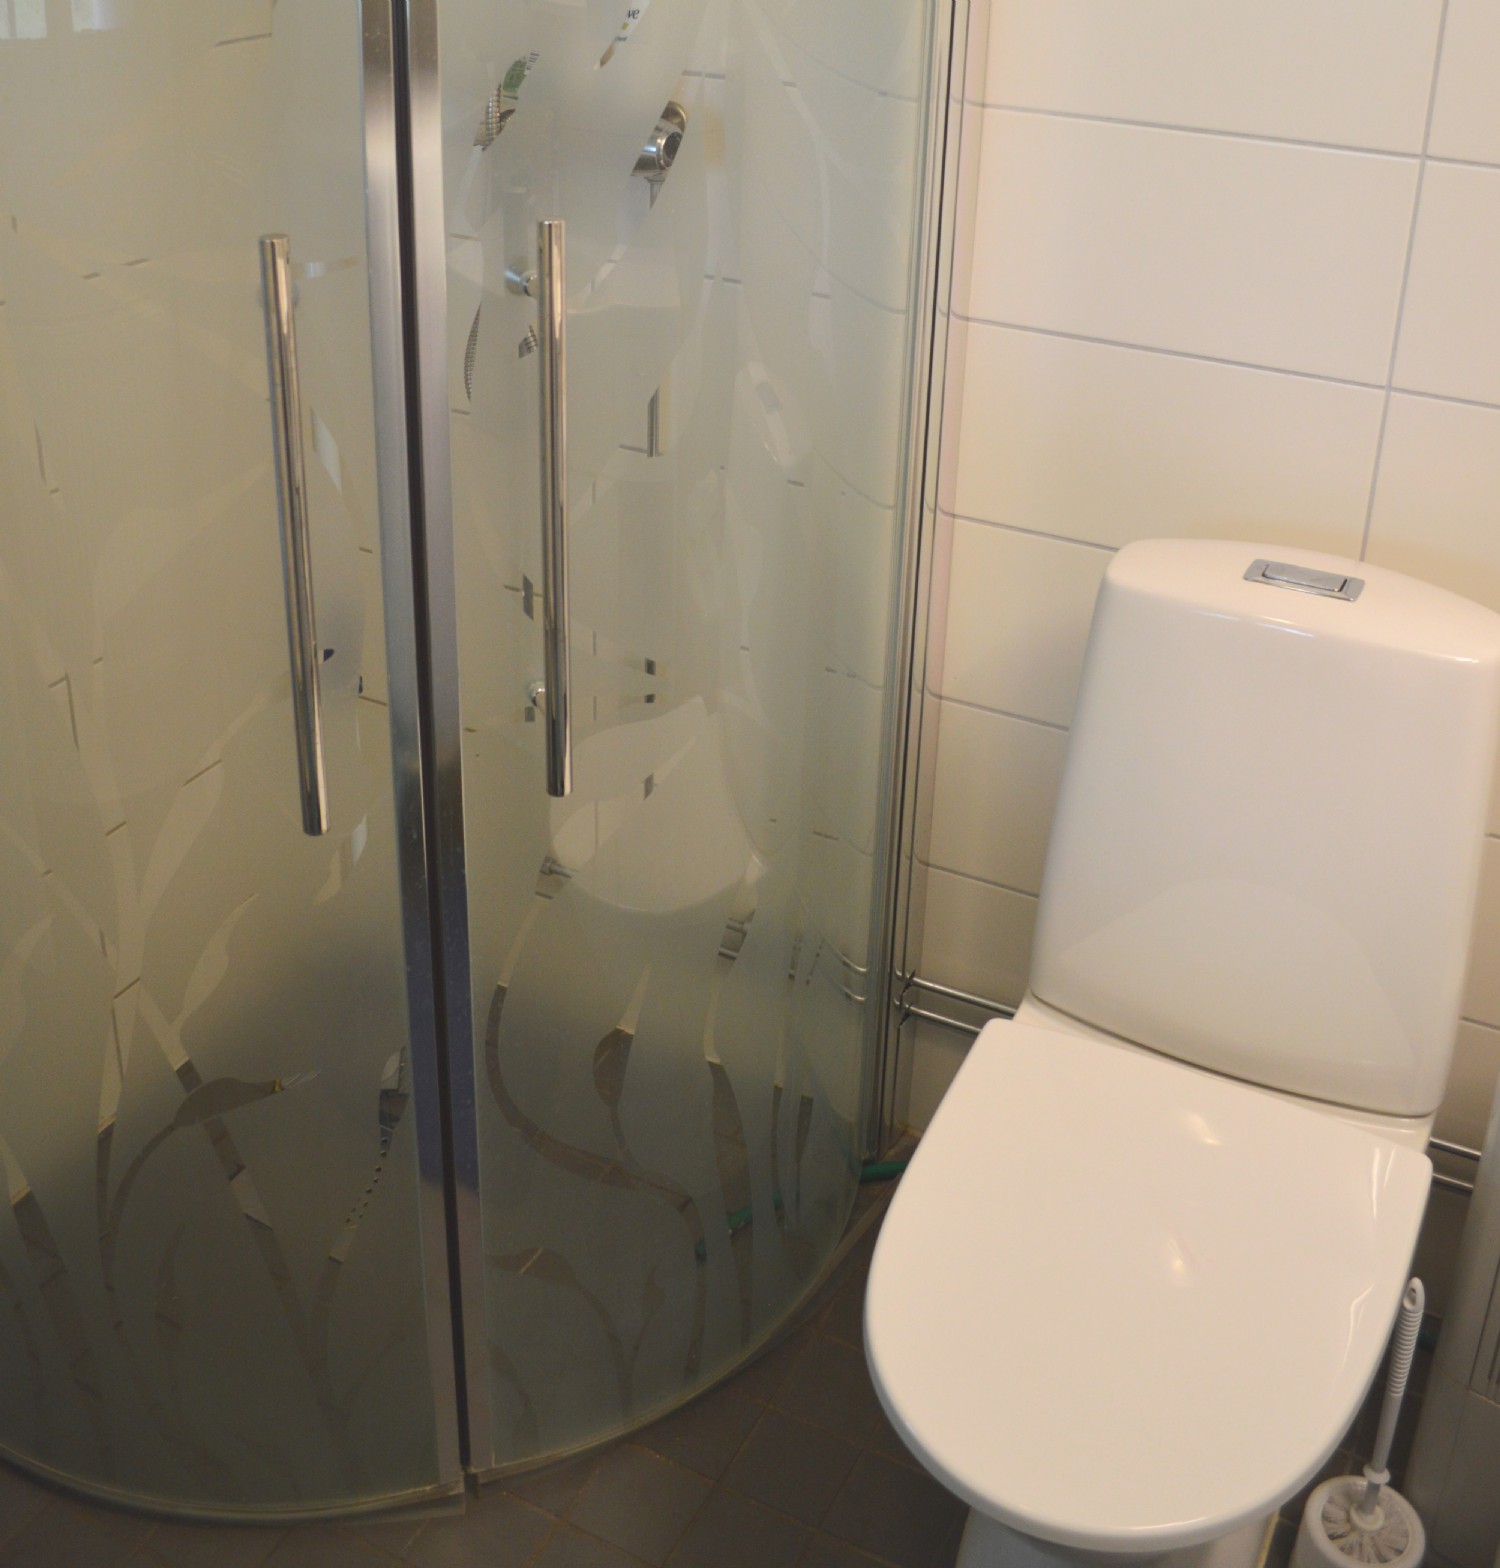 Dusch och WC kllarvning/ Shower and wc basement 